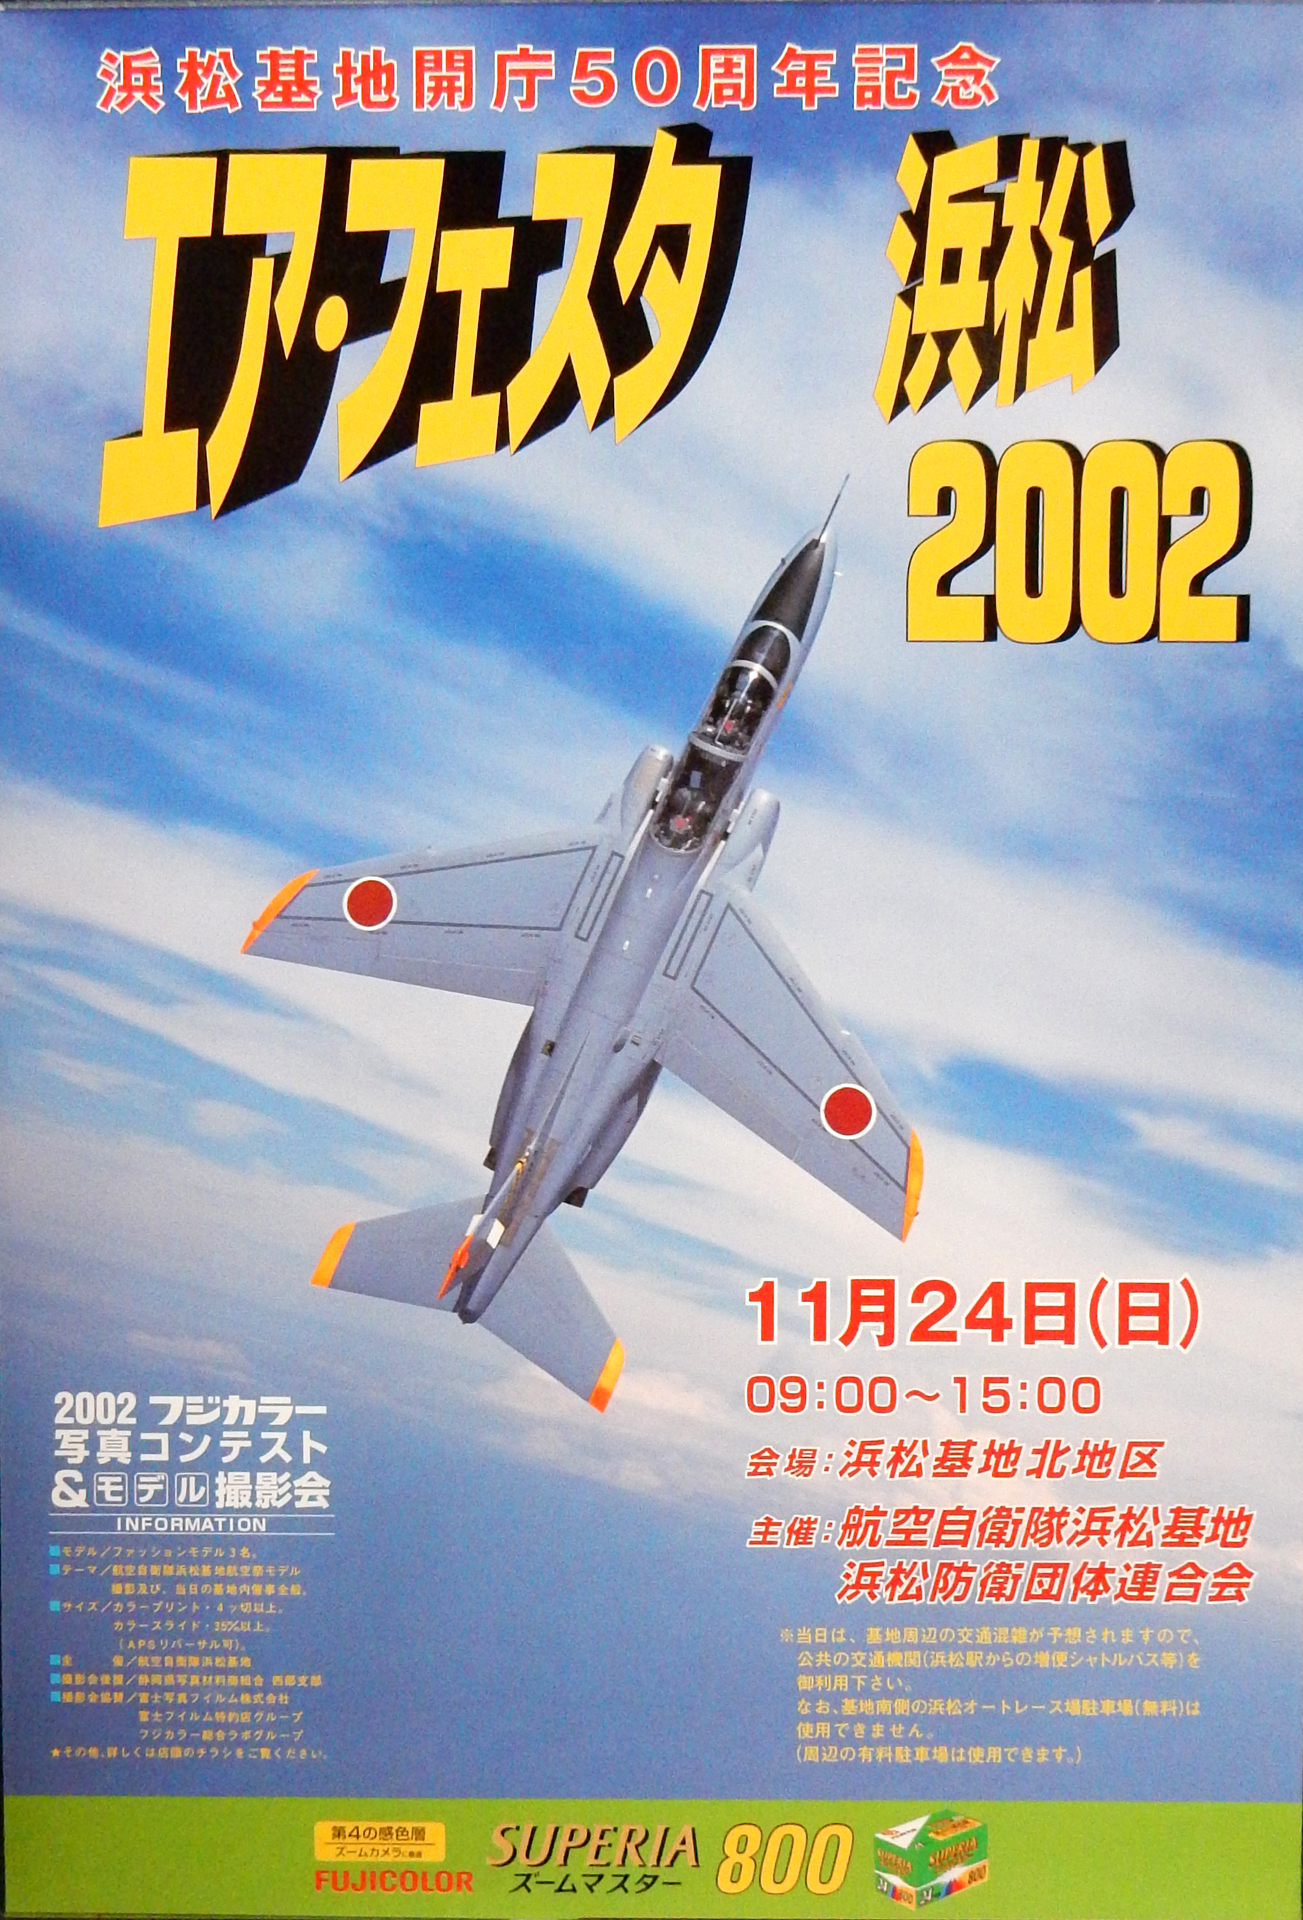 エアフェスタ浜松2002＜浜松基地航空祭＞ のポスター